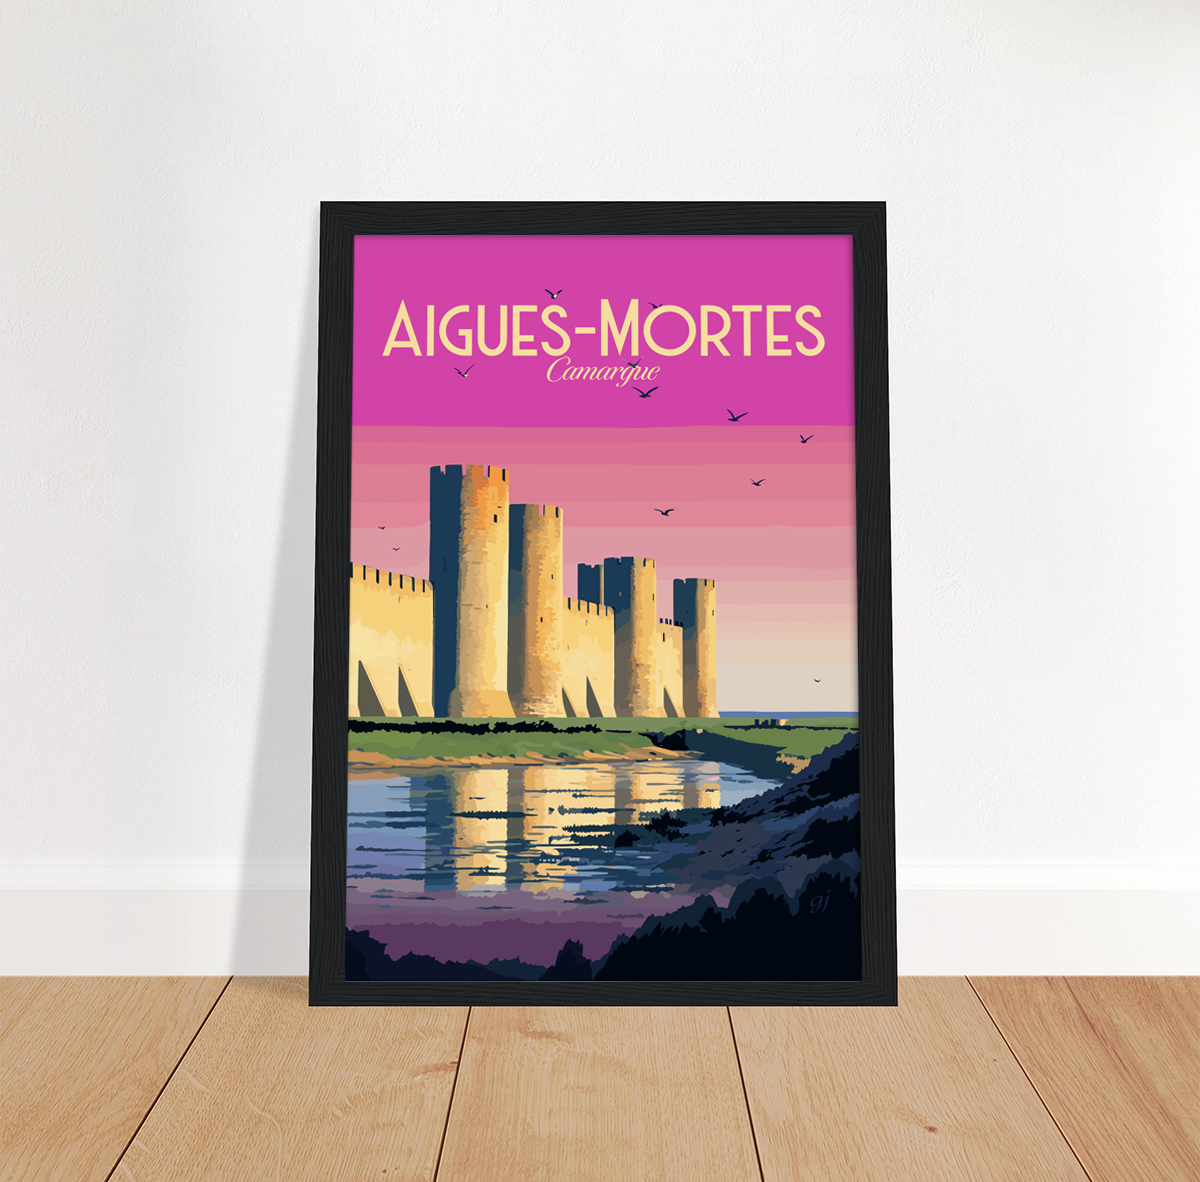 Aigues-Mortes poster by bon voyage design